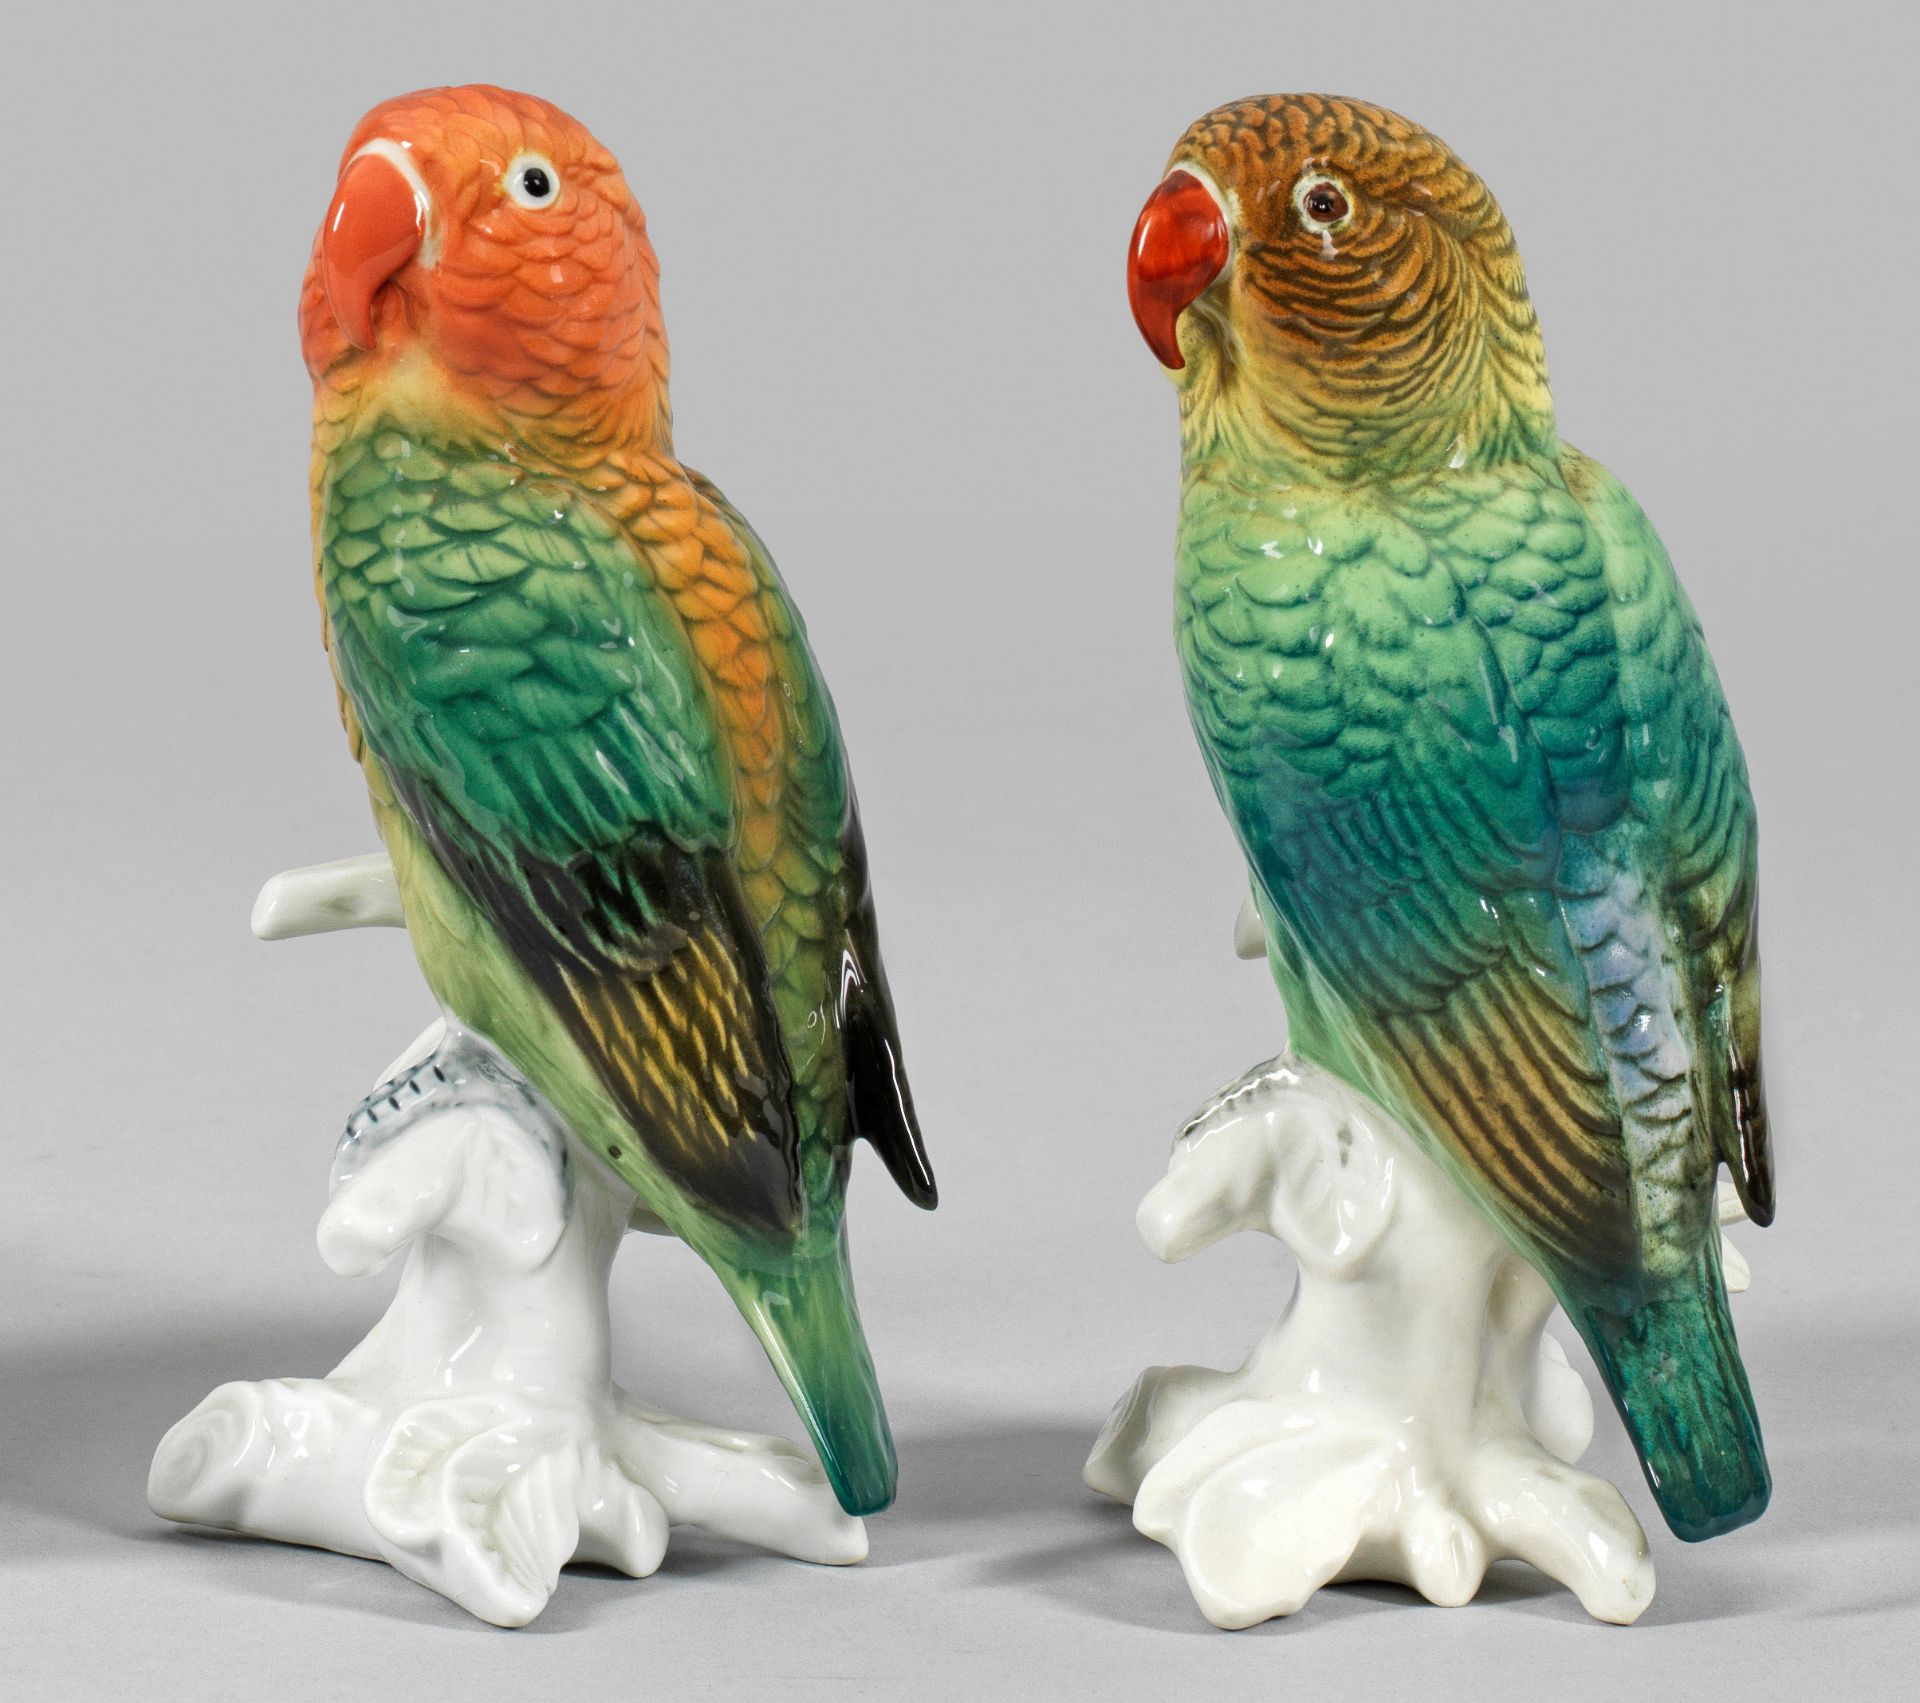 Paar Papageien auf Stamm